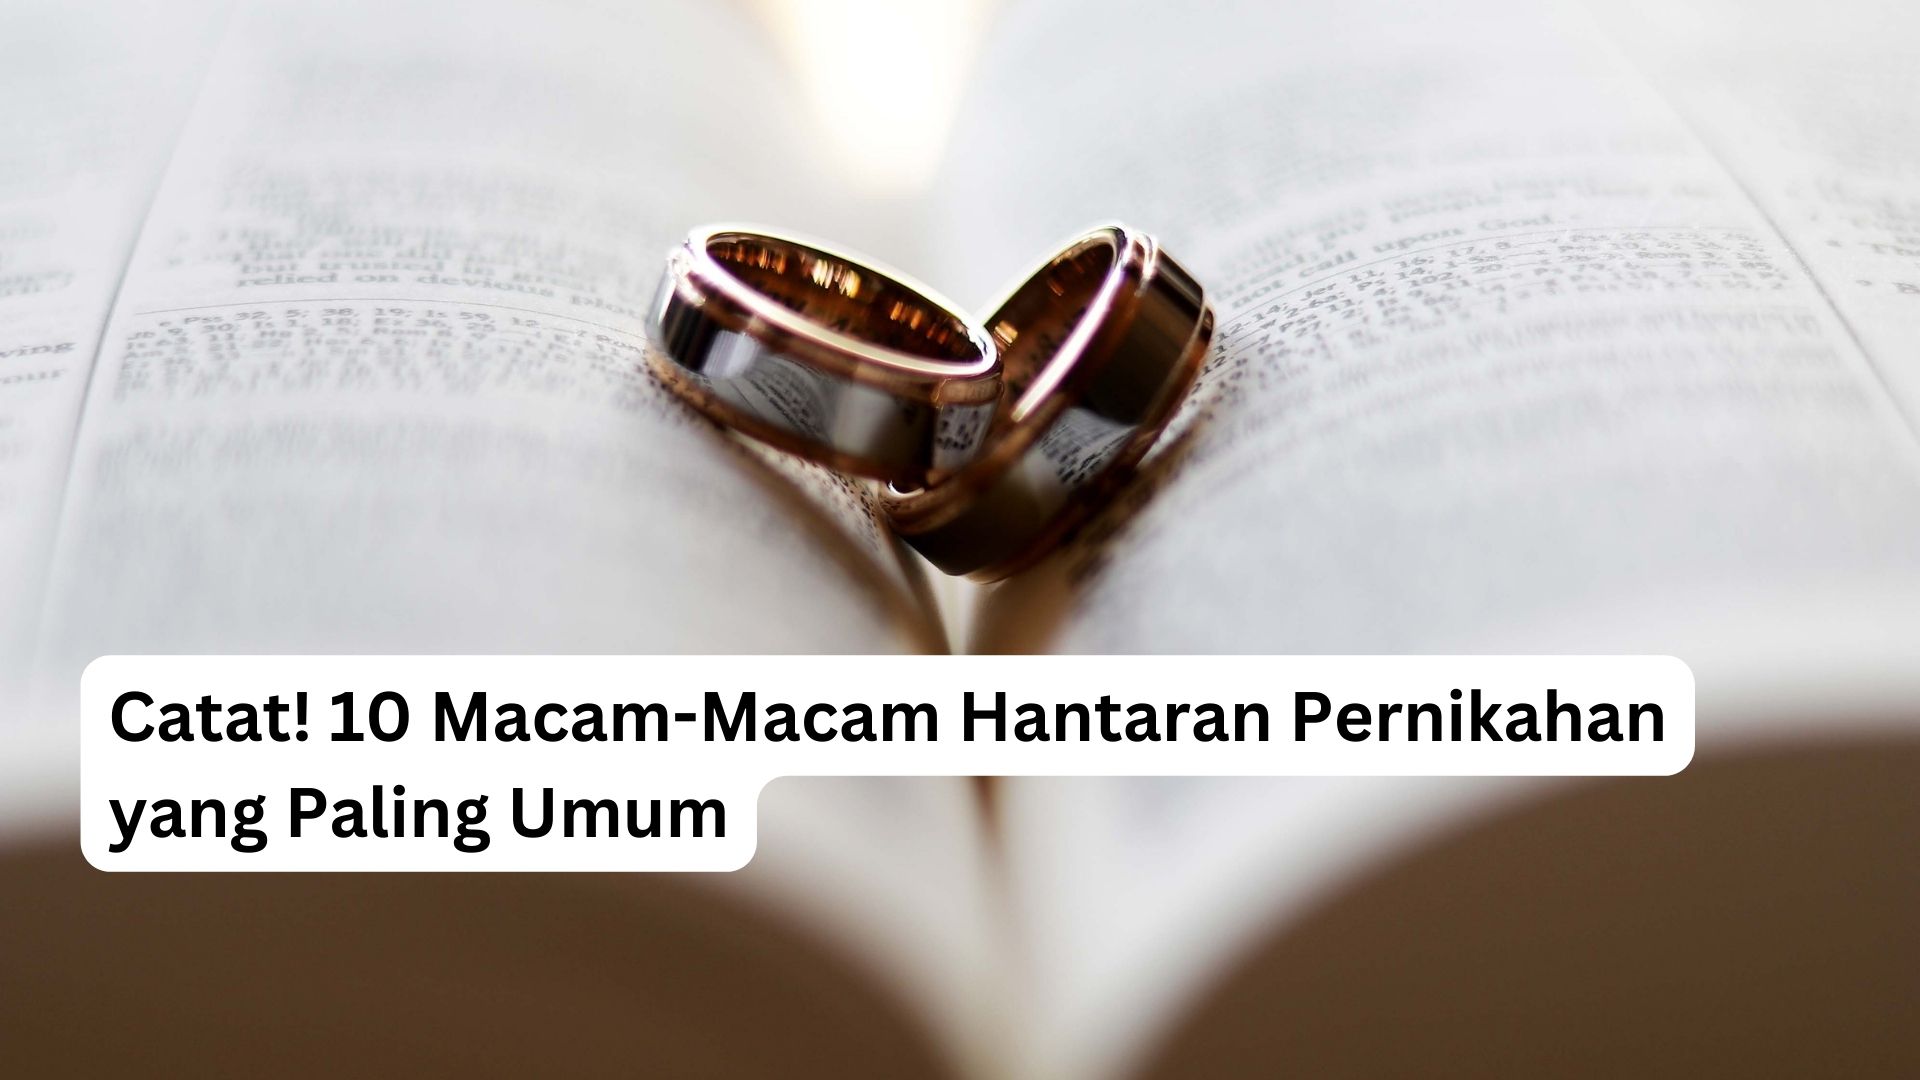 You are currently viewing Catat! 10 Macam-Macam Hantaran Pernikahan yang Paling Umum